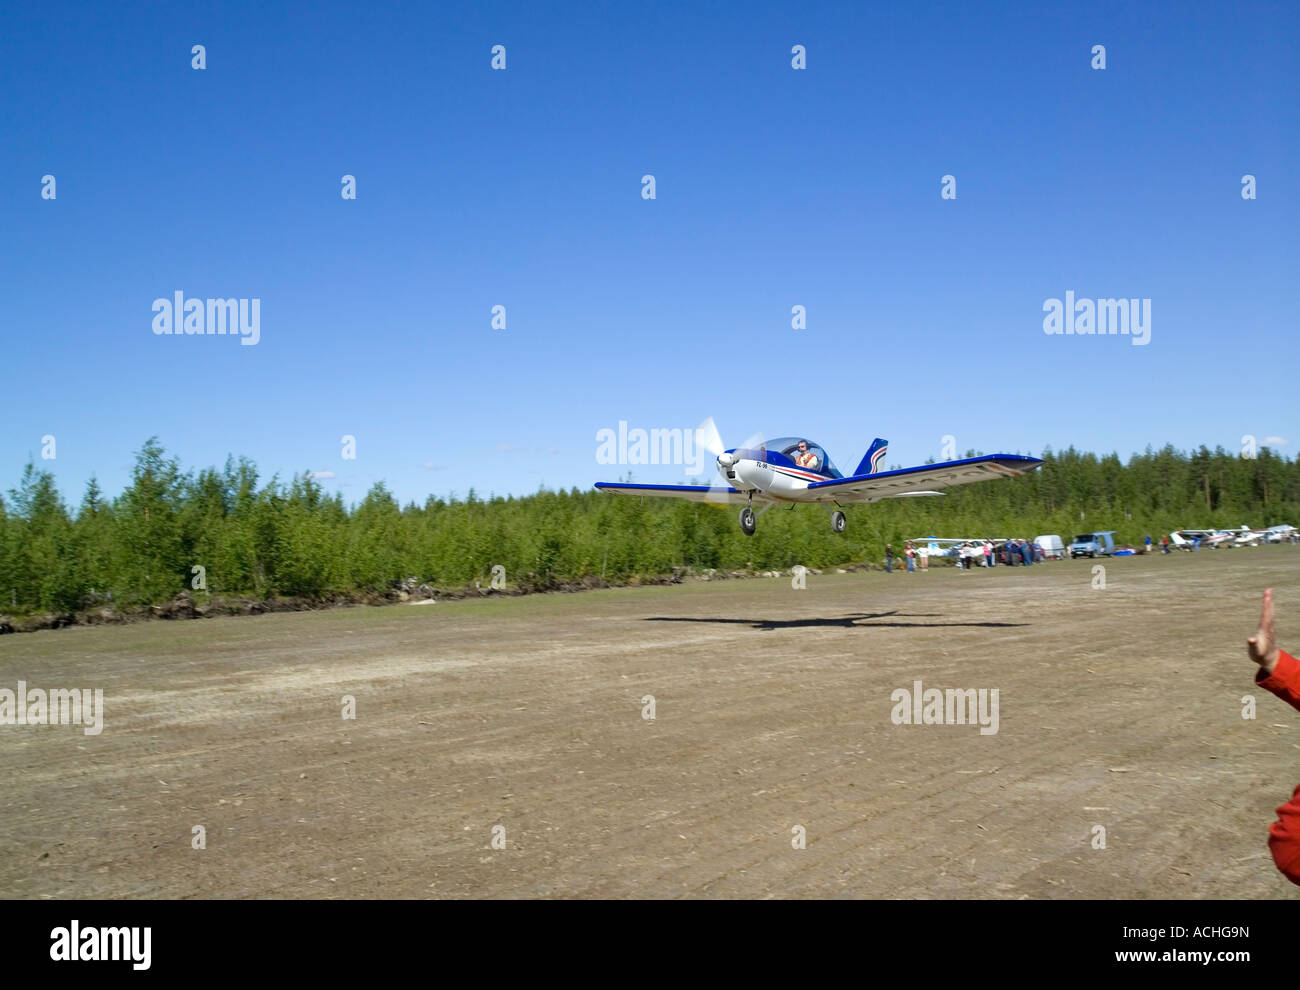 Kit aeroplane lift-off, Finland Stock Photo